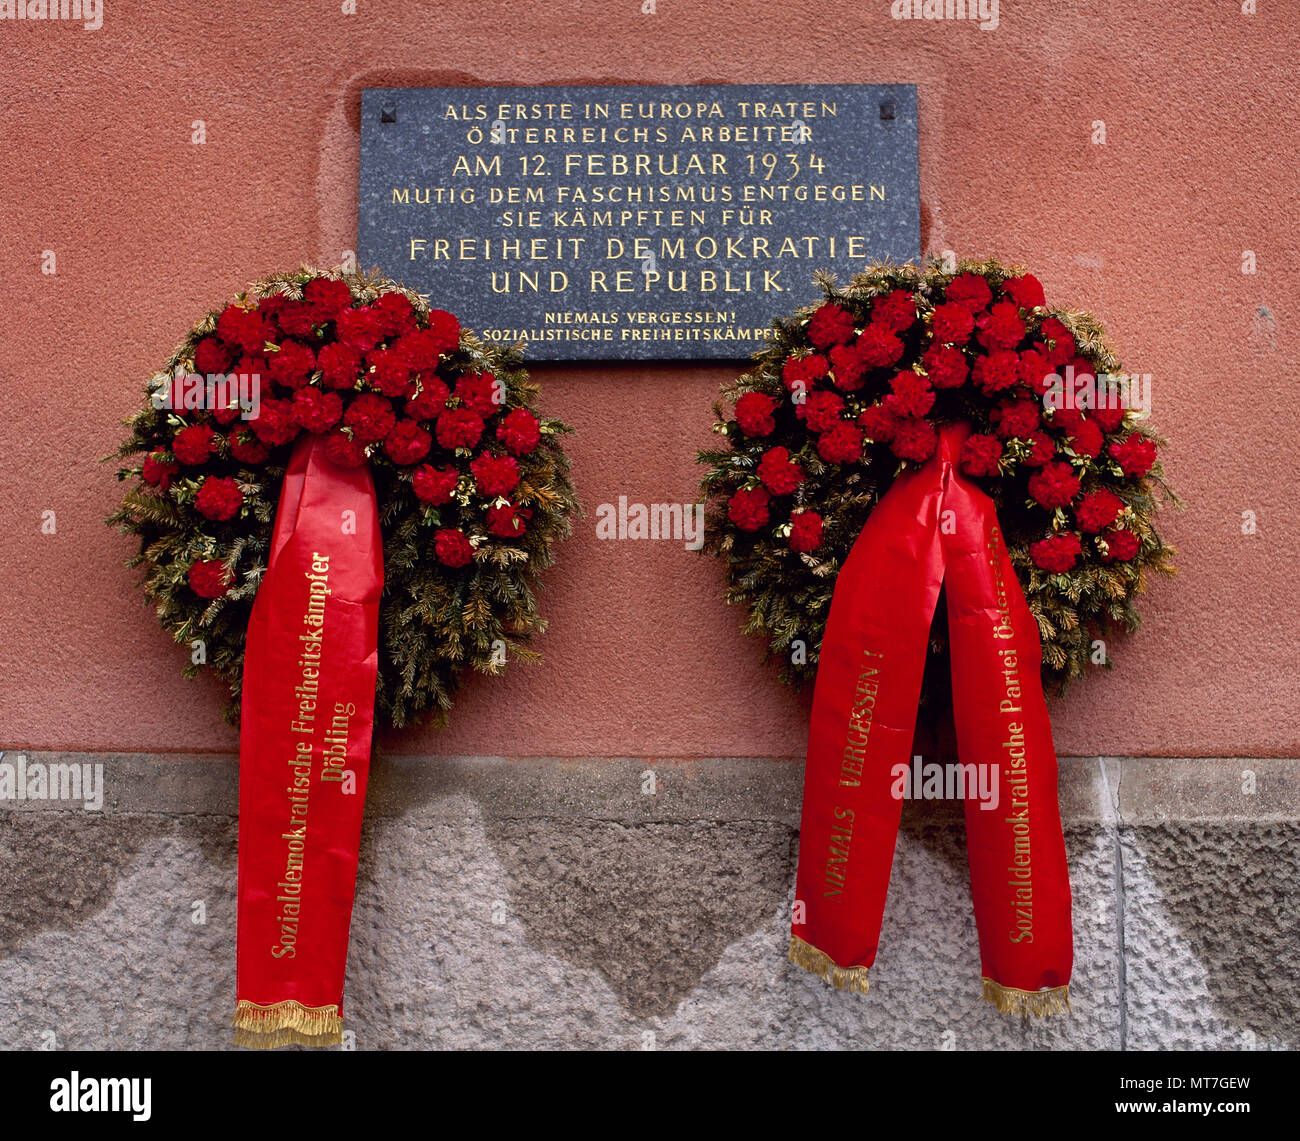 La guerre civile autrichienne ou soulèvement de février. Quatre jours d'escarmouches entre socialistes et l'armée autrichienne. 12-16 février, 1934. Le bâtiment du FCA de Karl Marx, de période rouge 'Vienna' (1918-1934) a été un champ de bataille pendant la courte durée de la guerre civile autrichienne. Plaque commémorative sur le mur de l'immeuble : 'le premier à affronter le fascisme en Europe ont été les travailleurs autrichiens. Ils se sont battus pour la liberté, de la démocratie et de la République. Nous n'oublions jamais !. Socialistes, combattants de la liberté". Vienne, Autriche. Banque D'Images